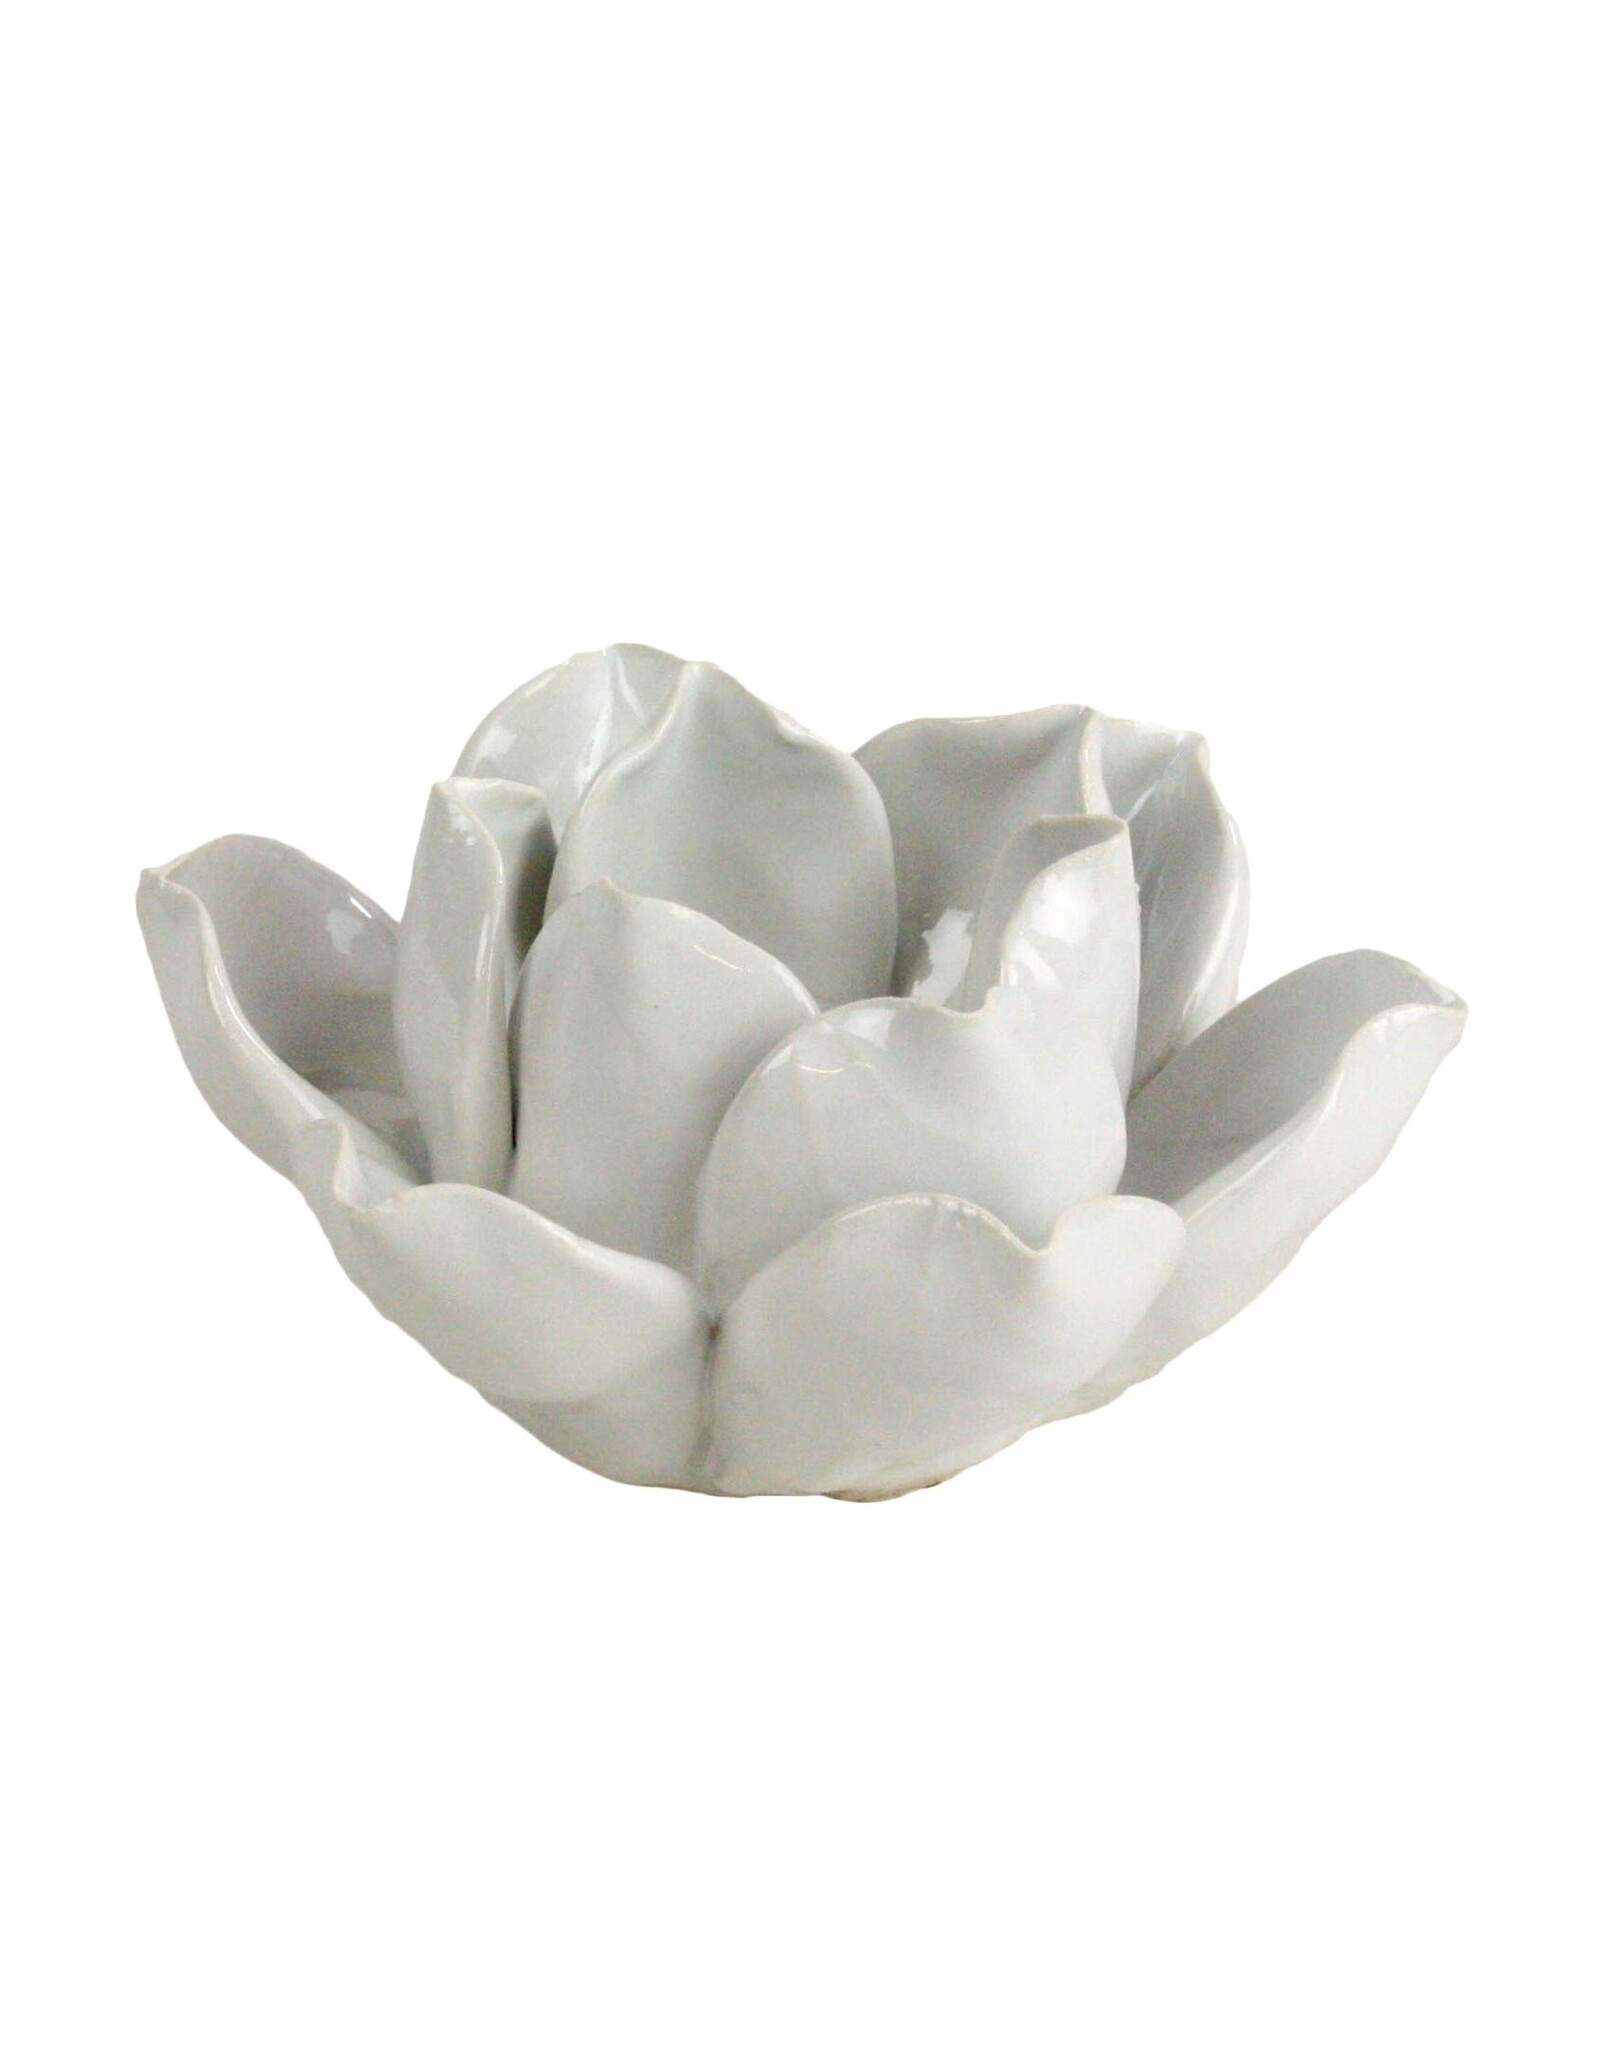 Lotus Tea Light Holder White